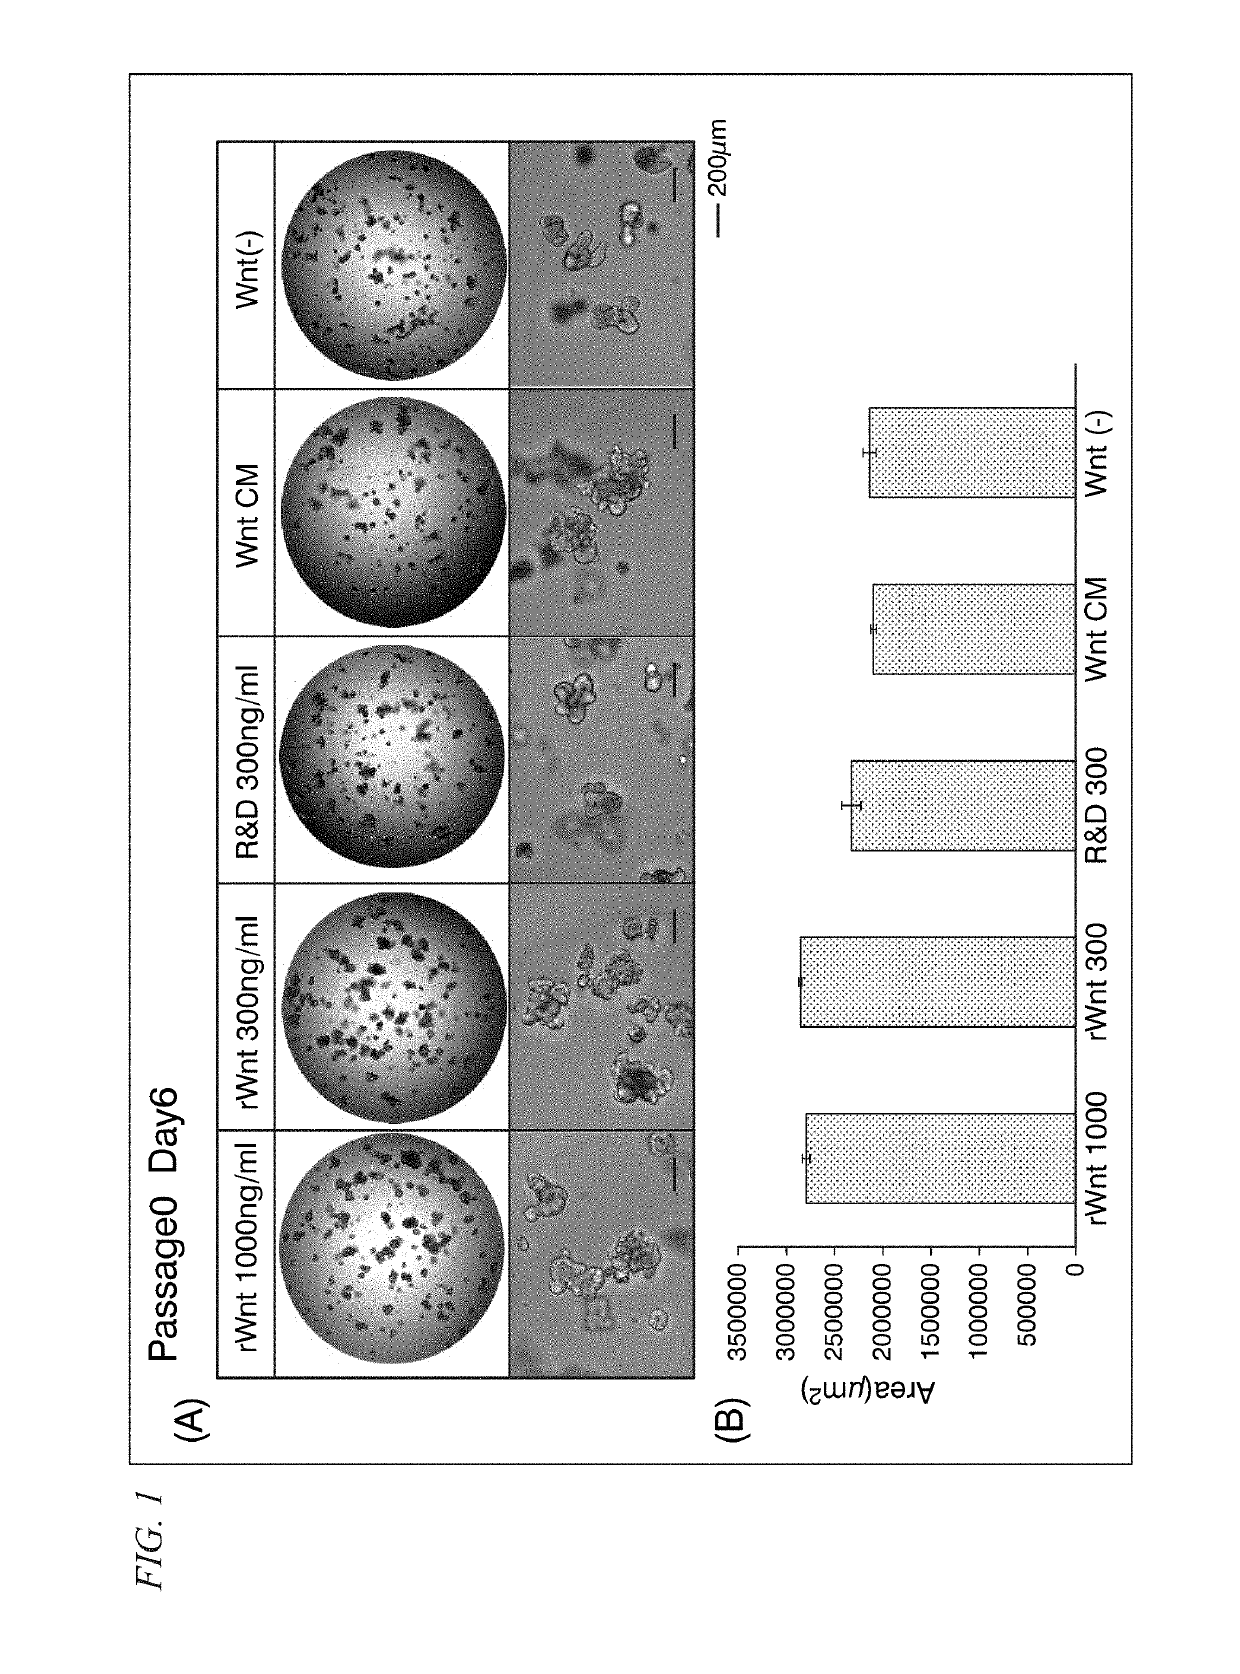 Cell culture medium, culture method, and organoid